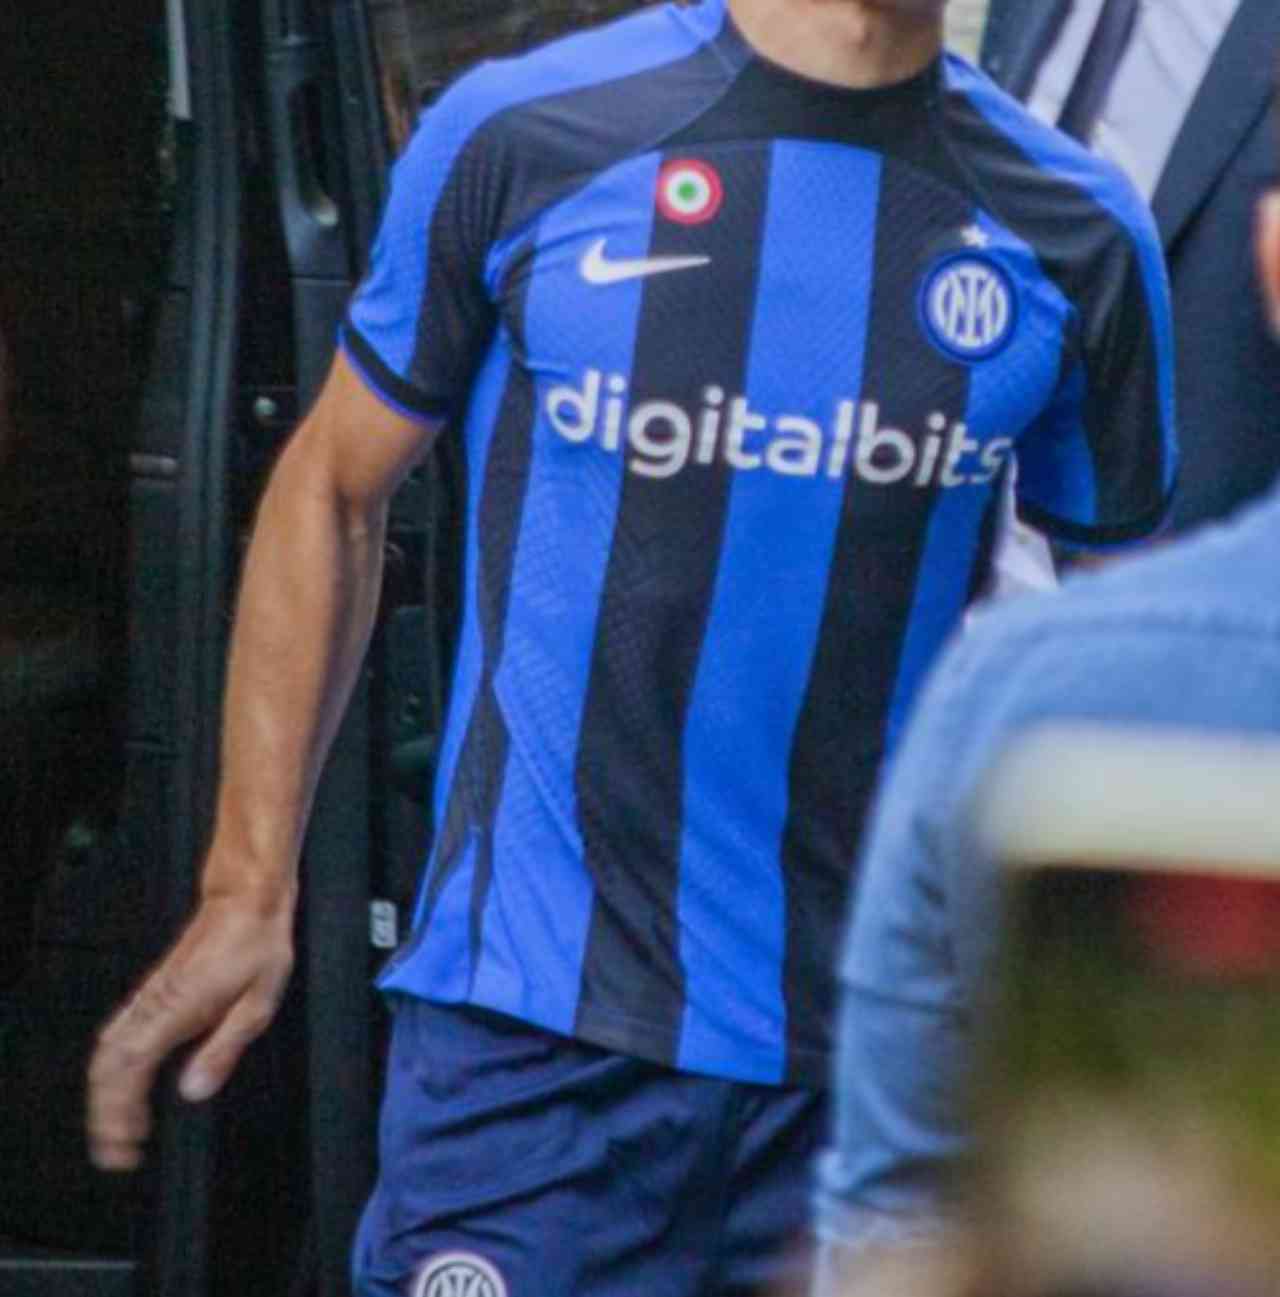 L'Inter passa al contrattacco: via lo sponsor Digitalbits dalle divise femminili e della Primavera